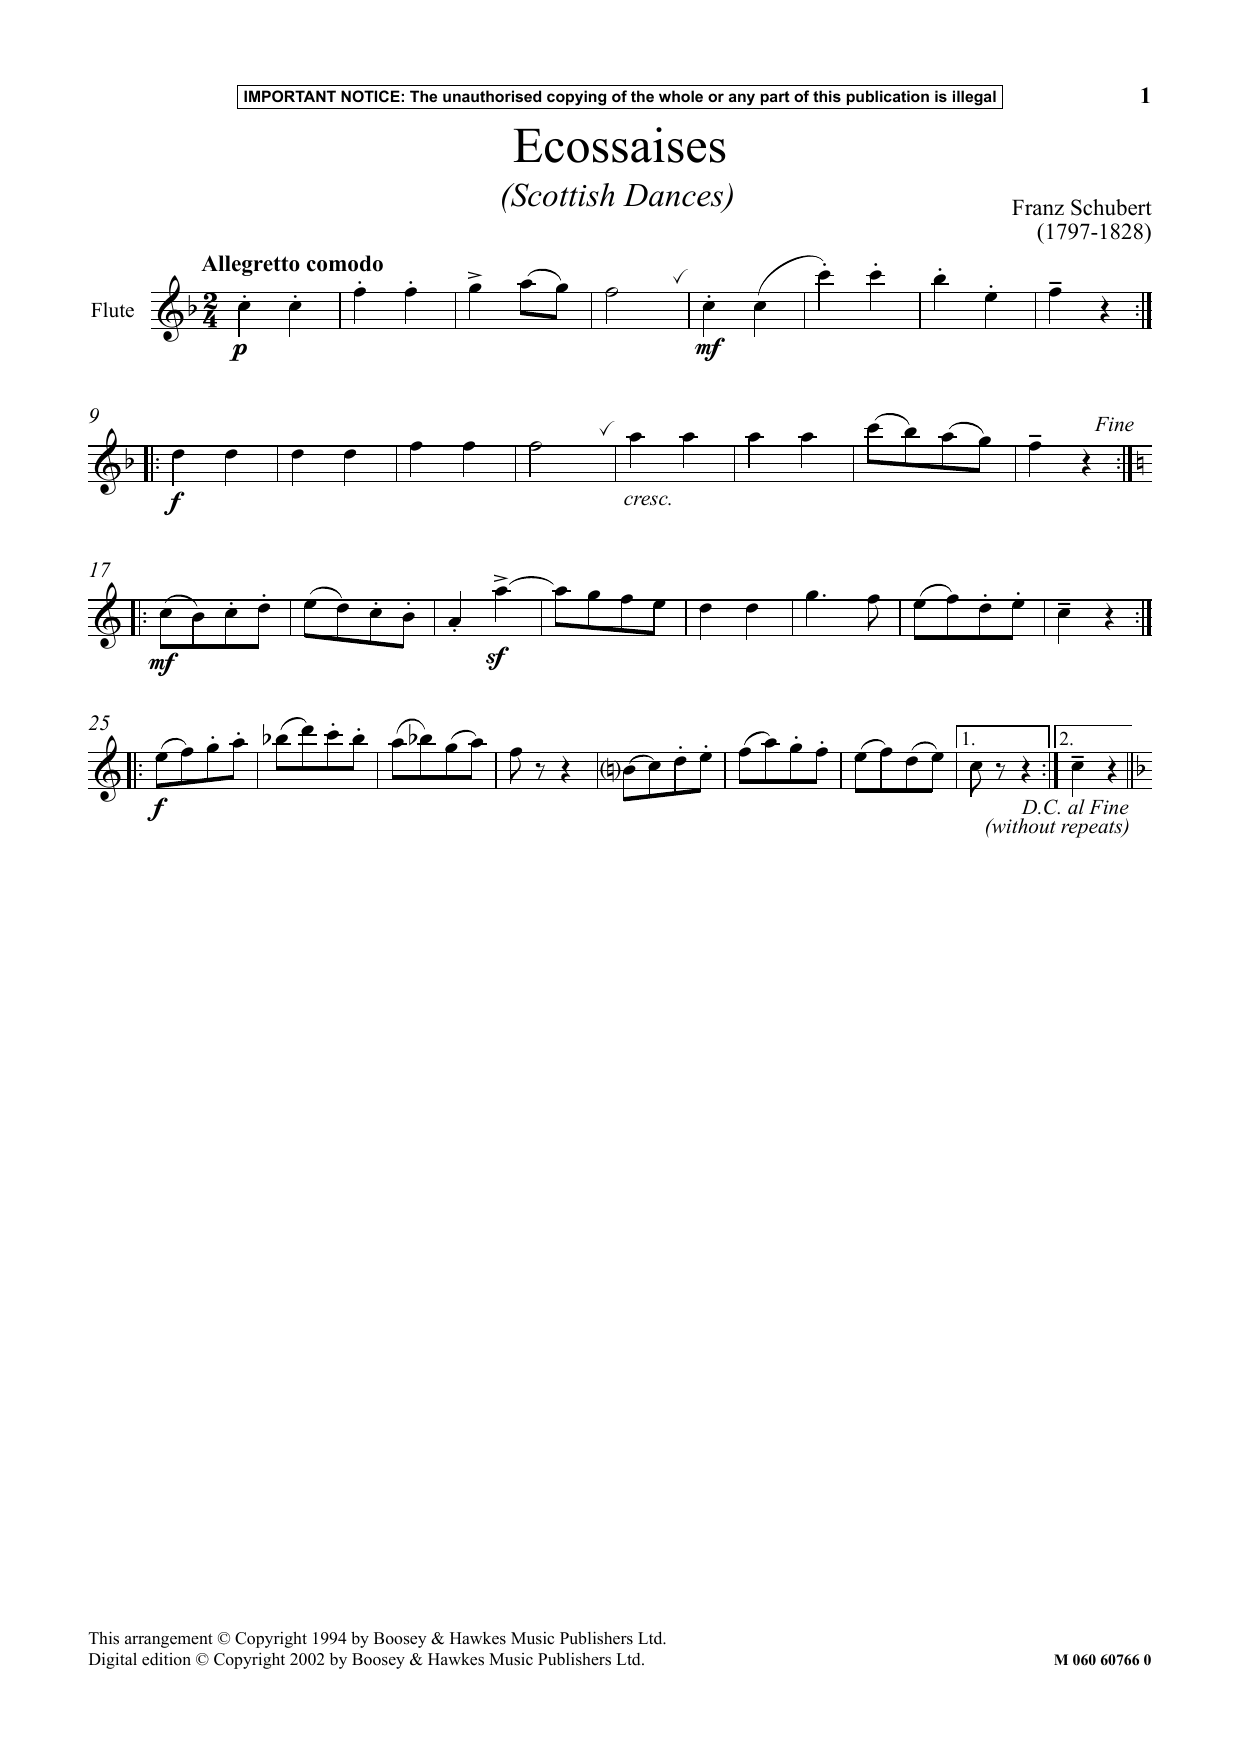 Download Franz Schubert Ecossaises (Scottish Dances) Sheet Music